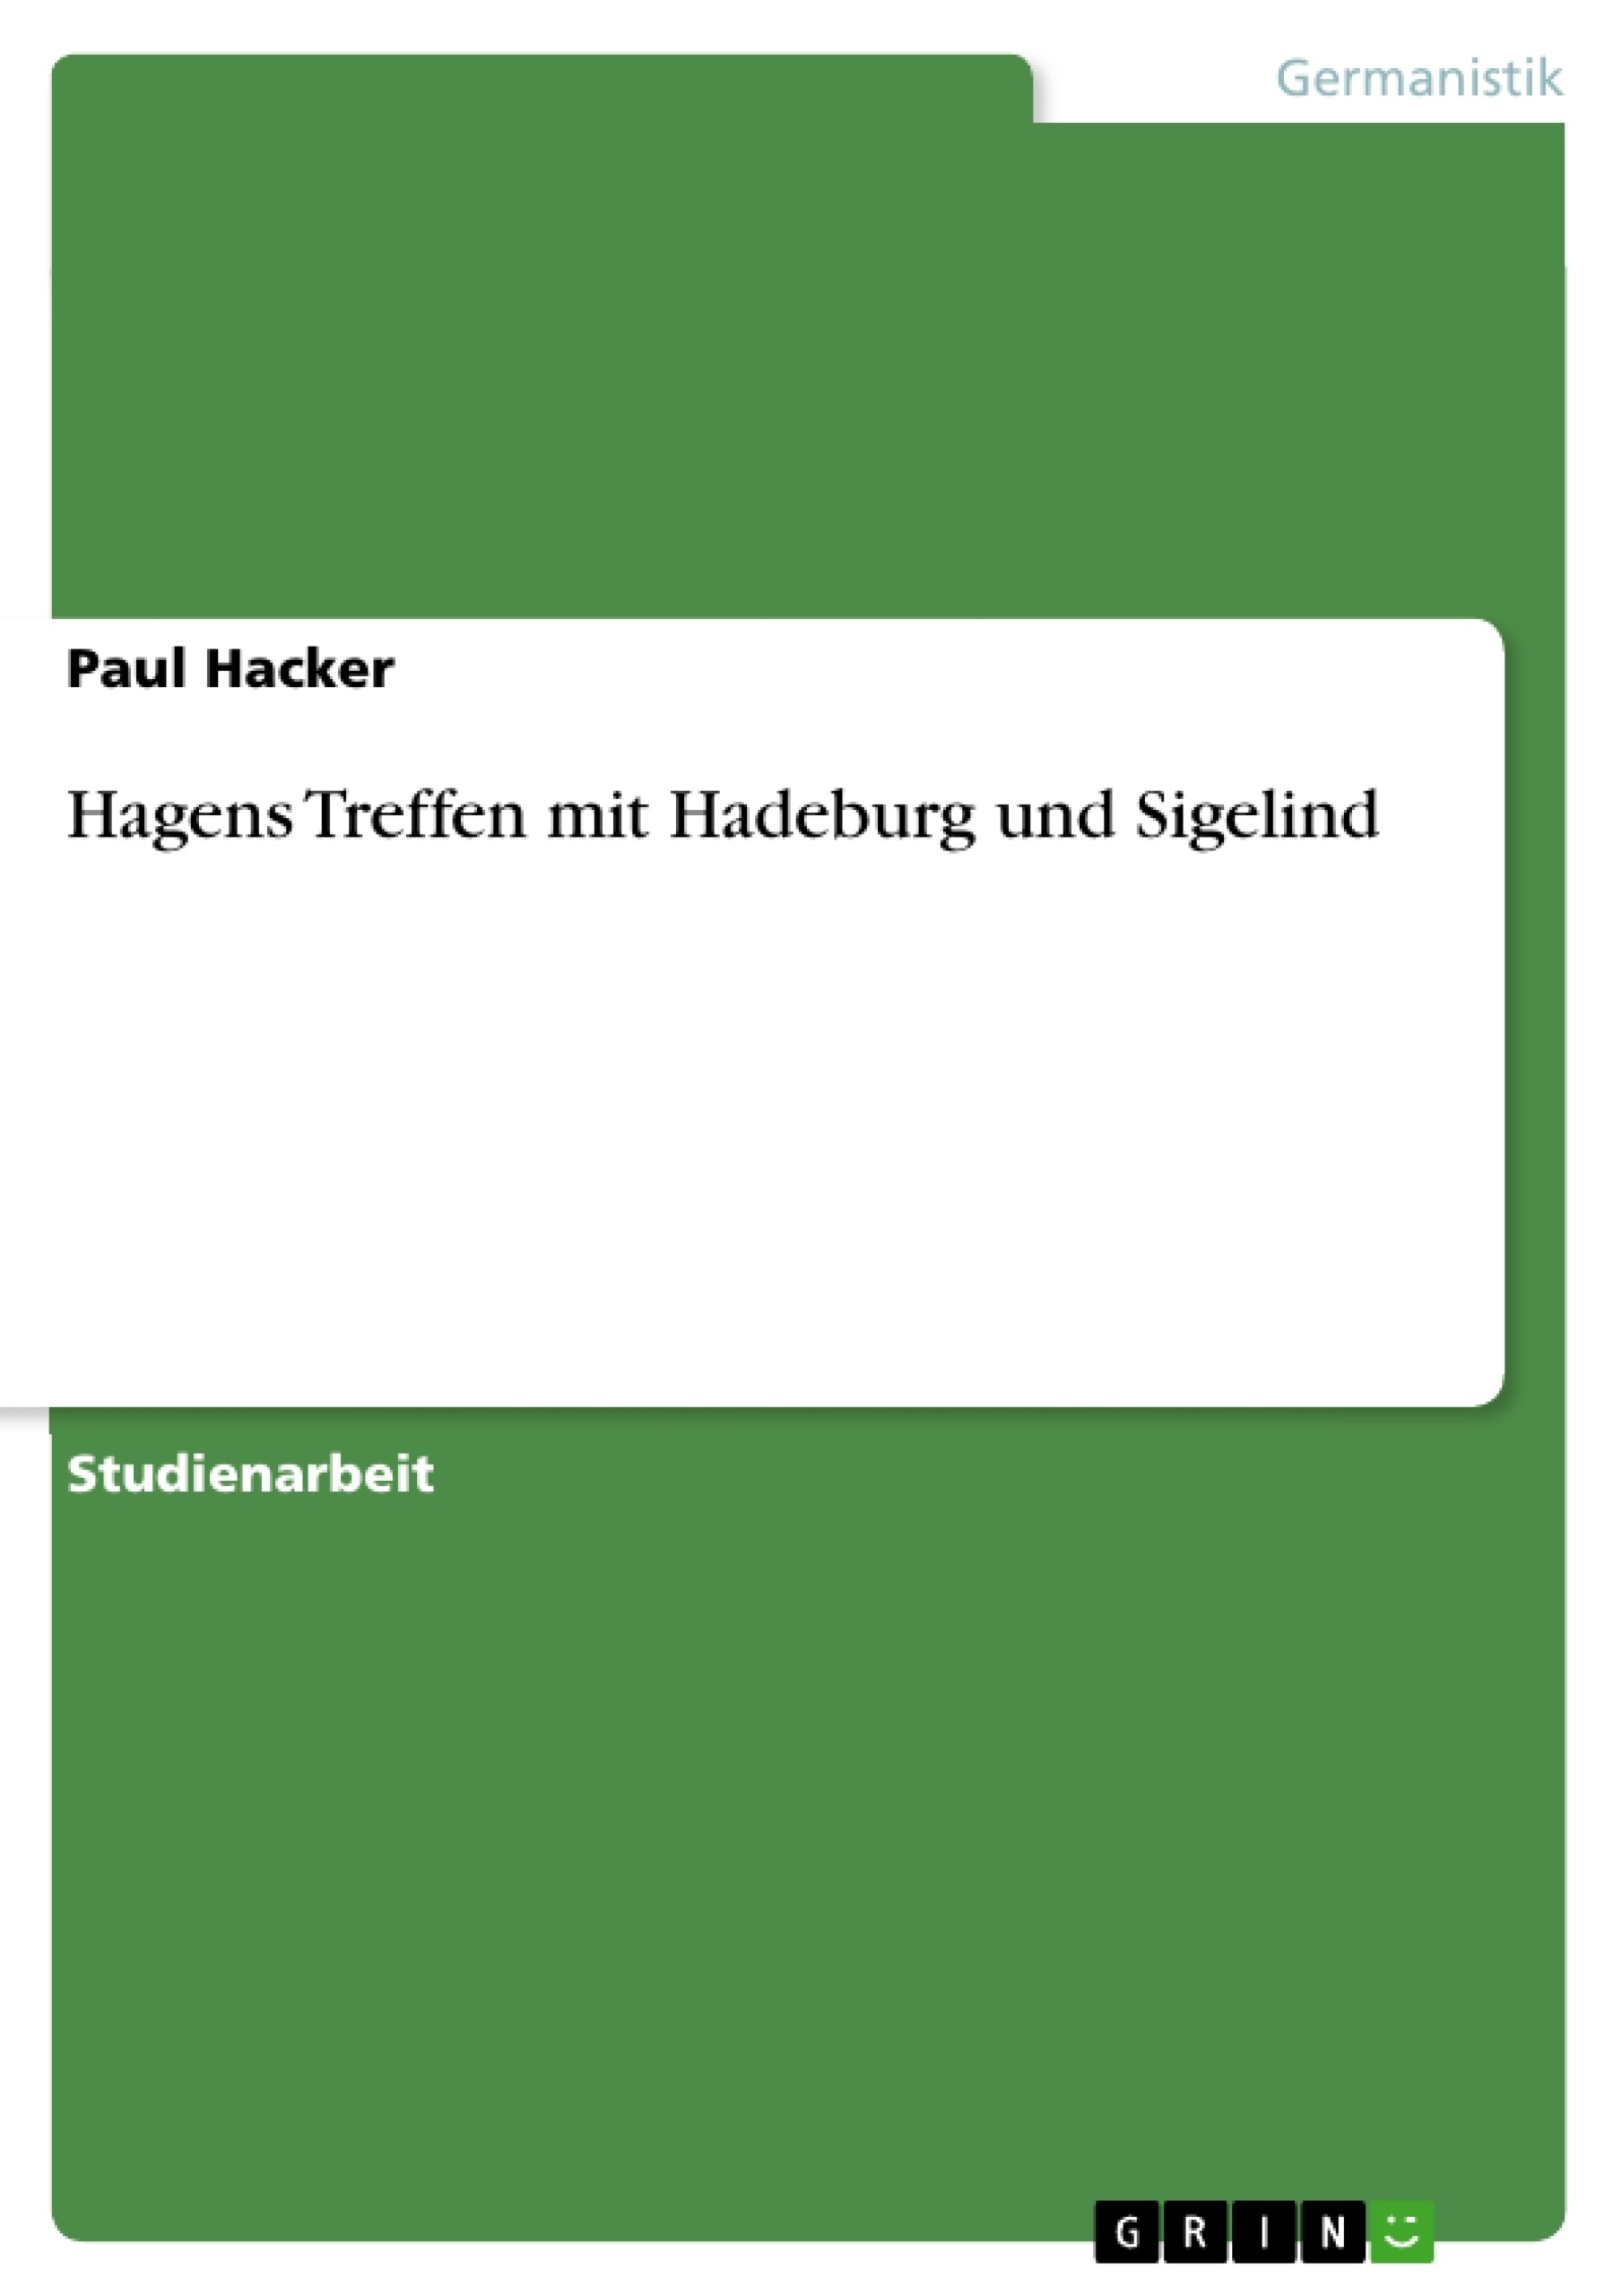 Titre: Hagens Treffen mit Hadeburg und Sigelind